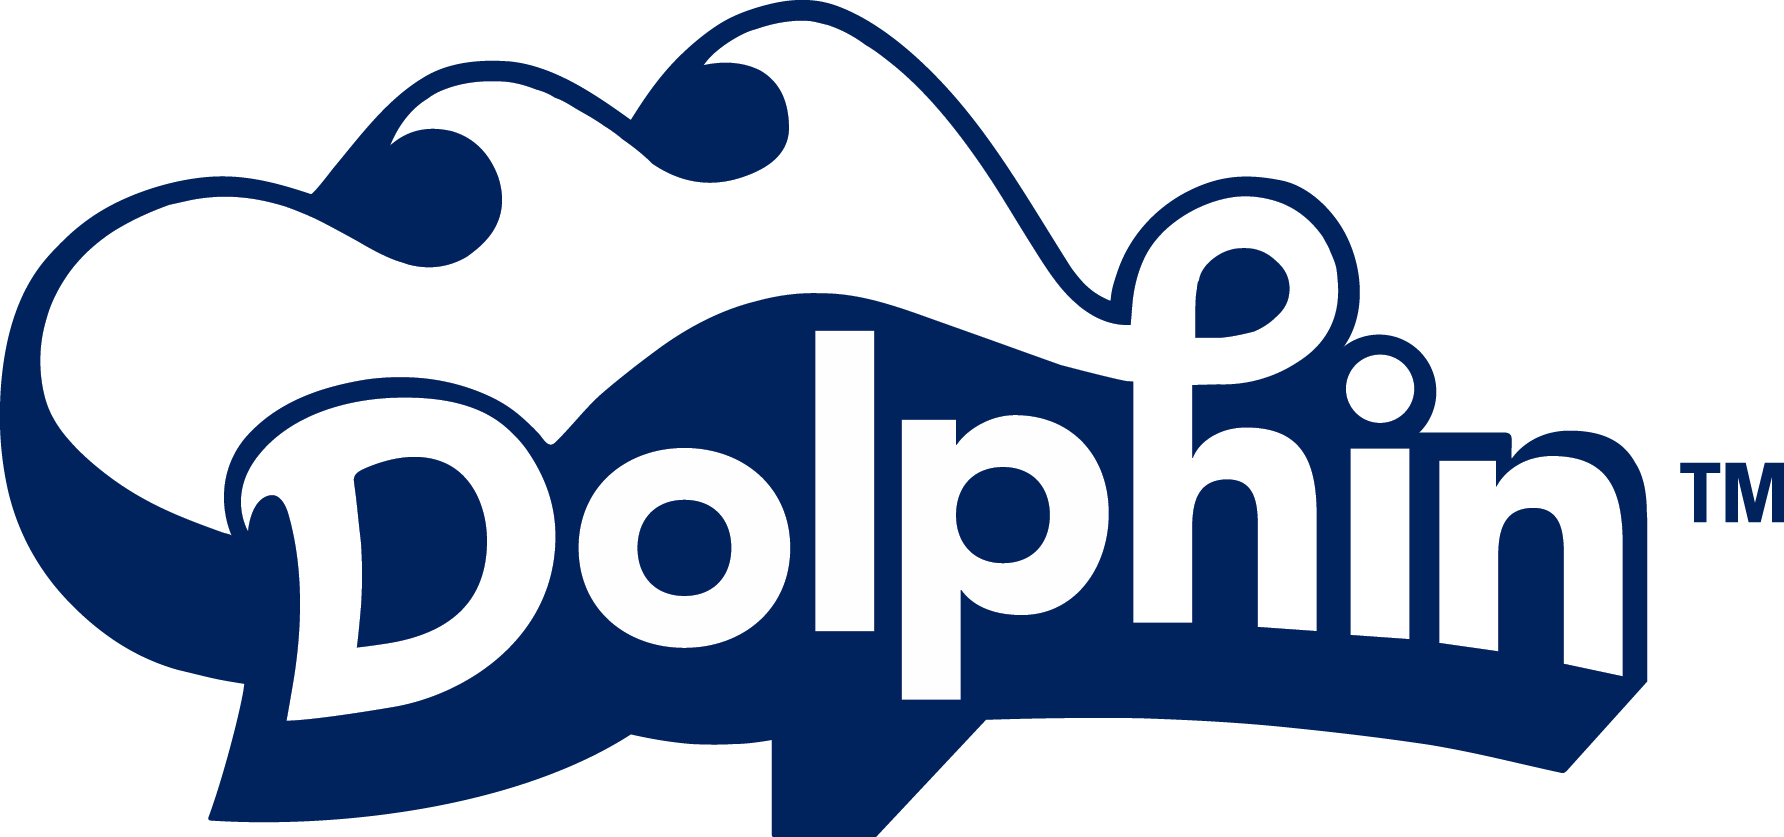 Dolphin marque piscine